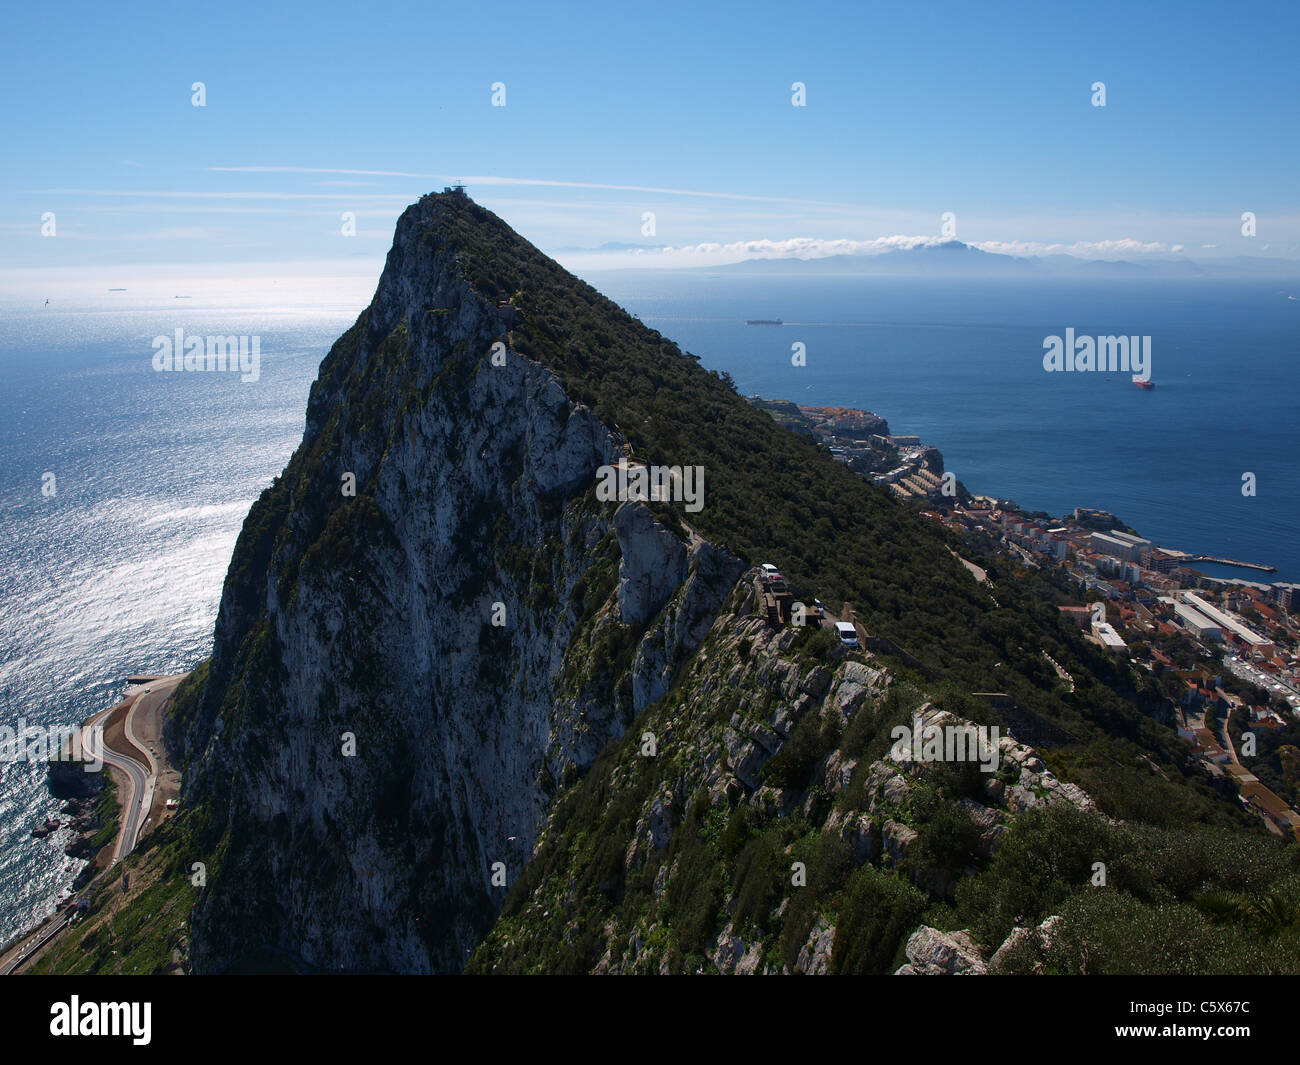 Le célèbre rocher de Gibraltar et la mer. Banque D'Images